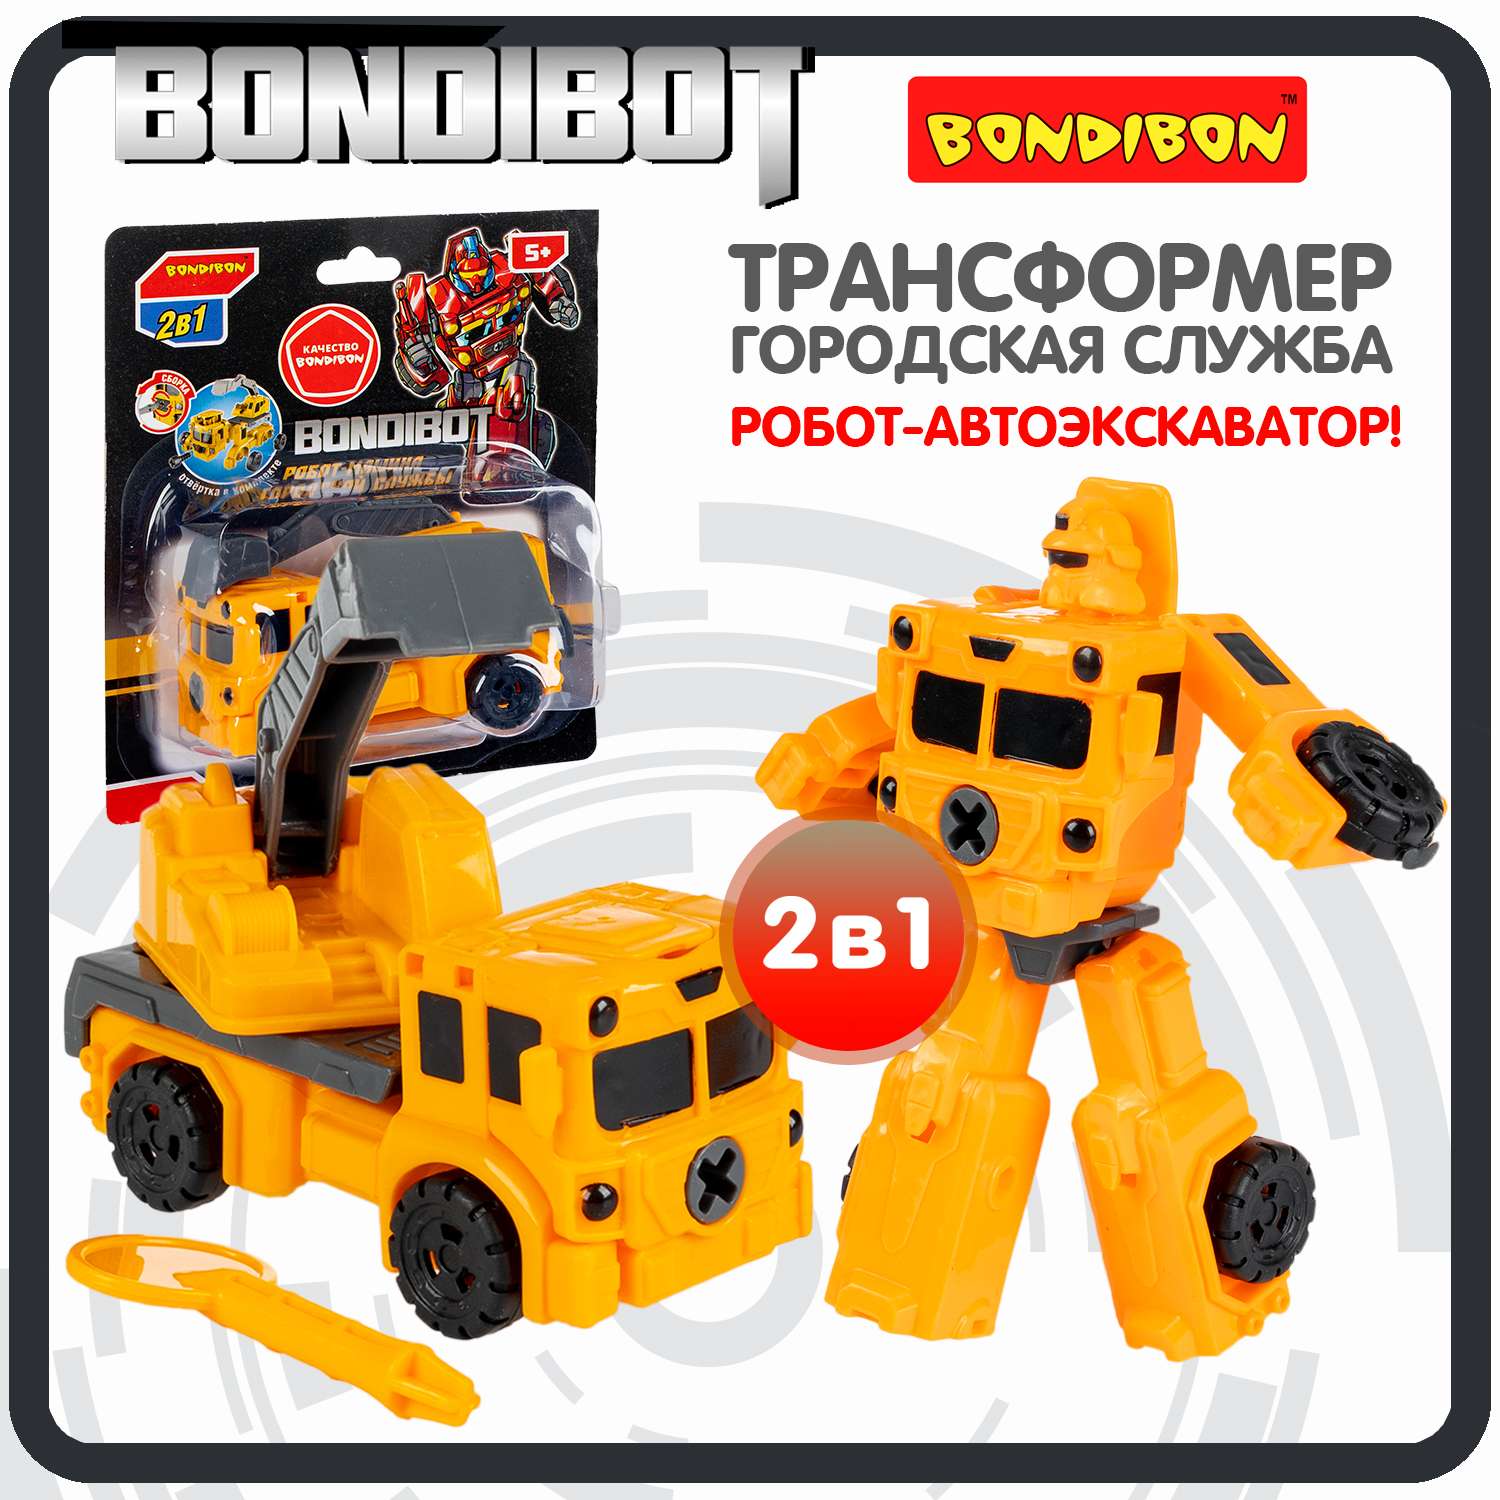 Трансформер BONDIBON bondibot 2 в 1 Робот-колесный экскаватор желтого цвета - фото 1